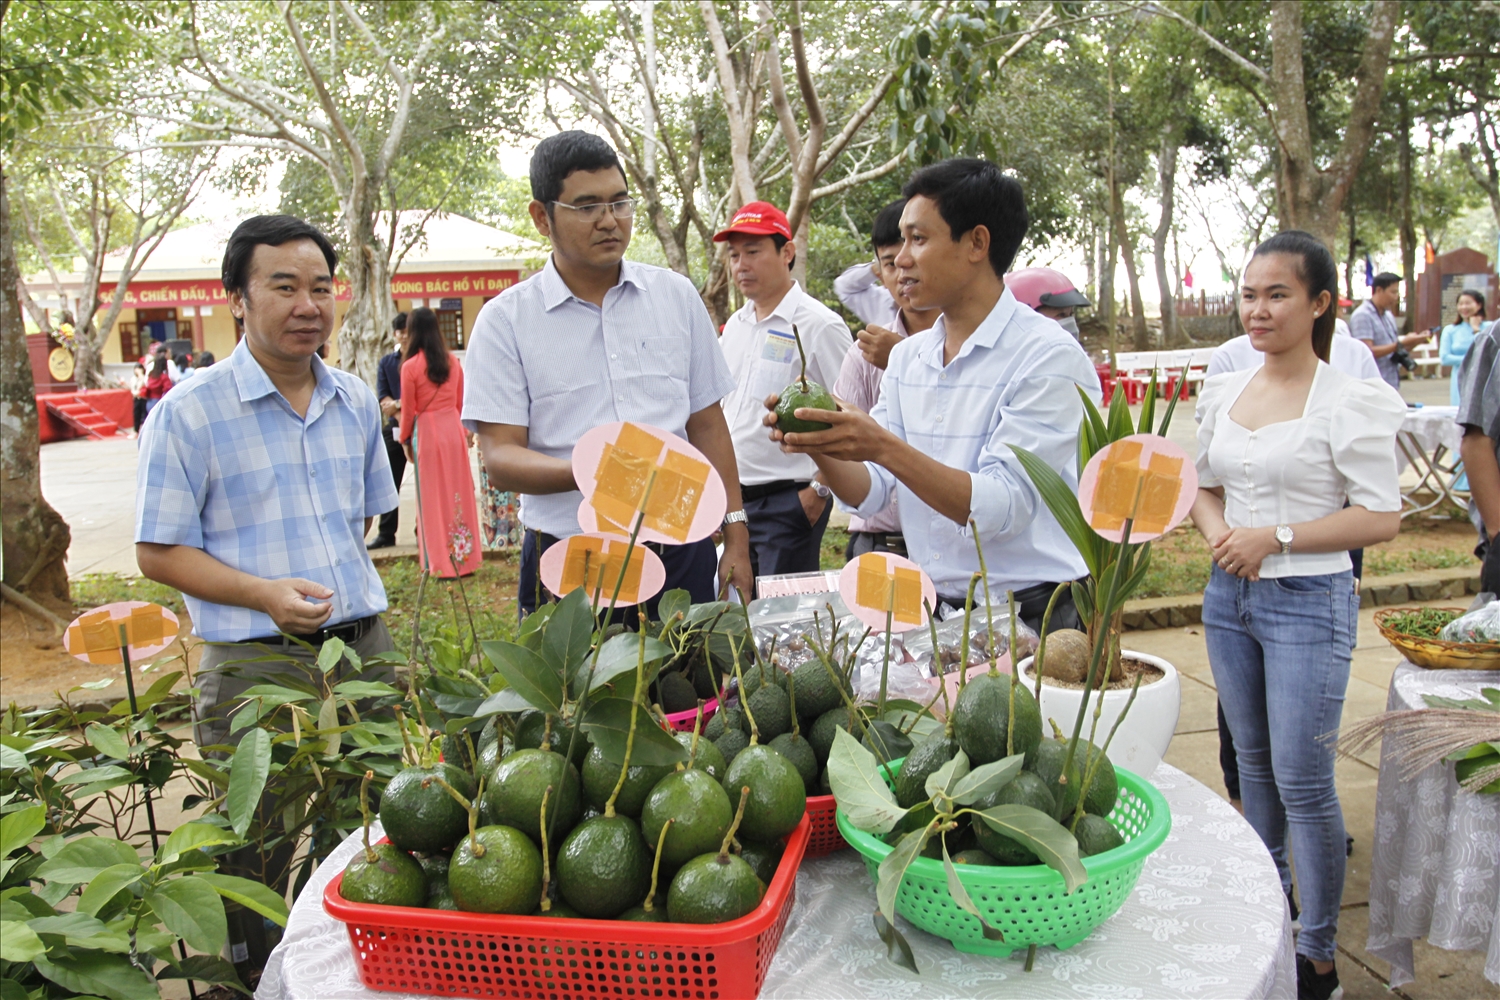 Hiện nay, sản phẩm của các HTX nông nghiệp ở Phú Yên được nhiều người quan tâm